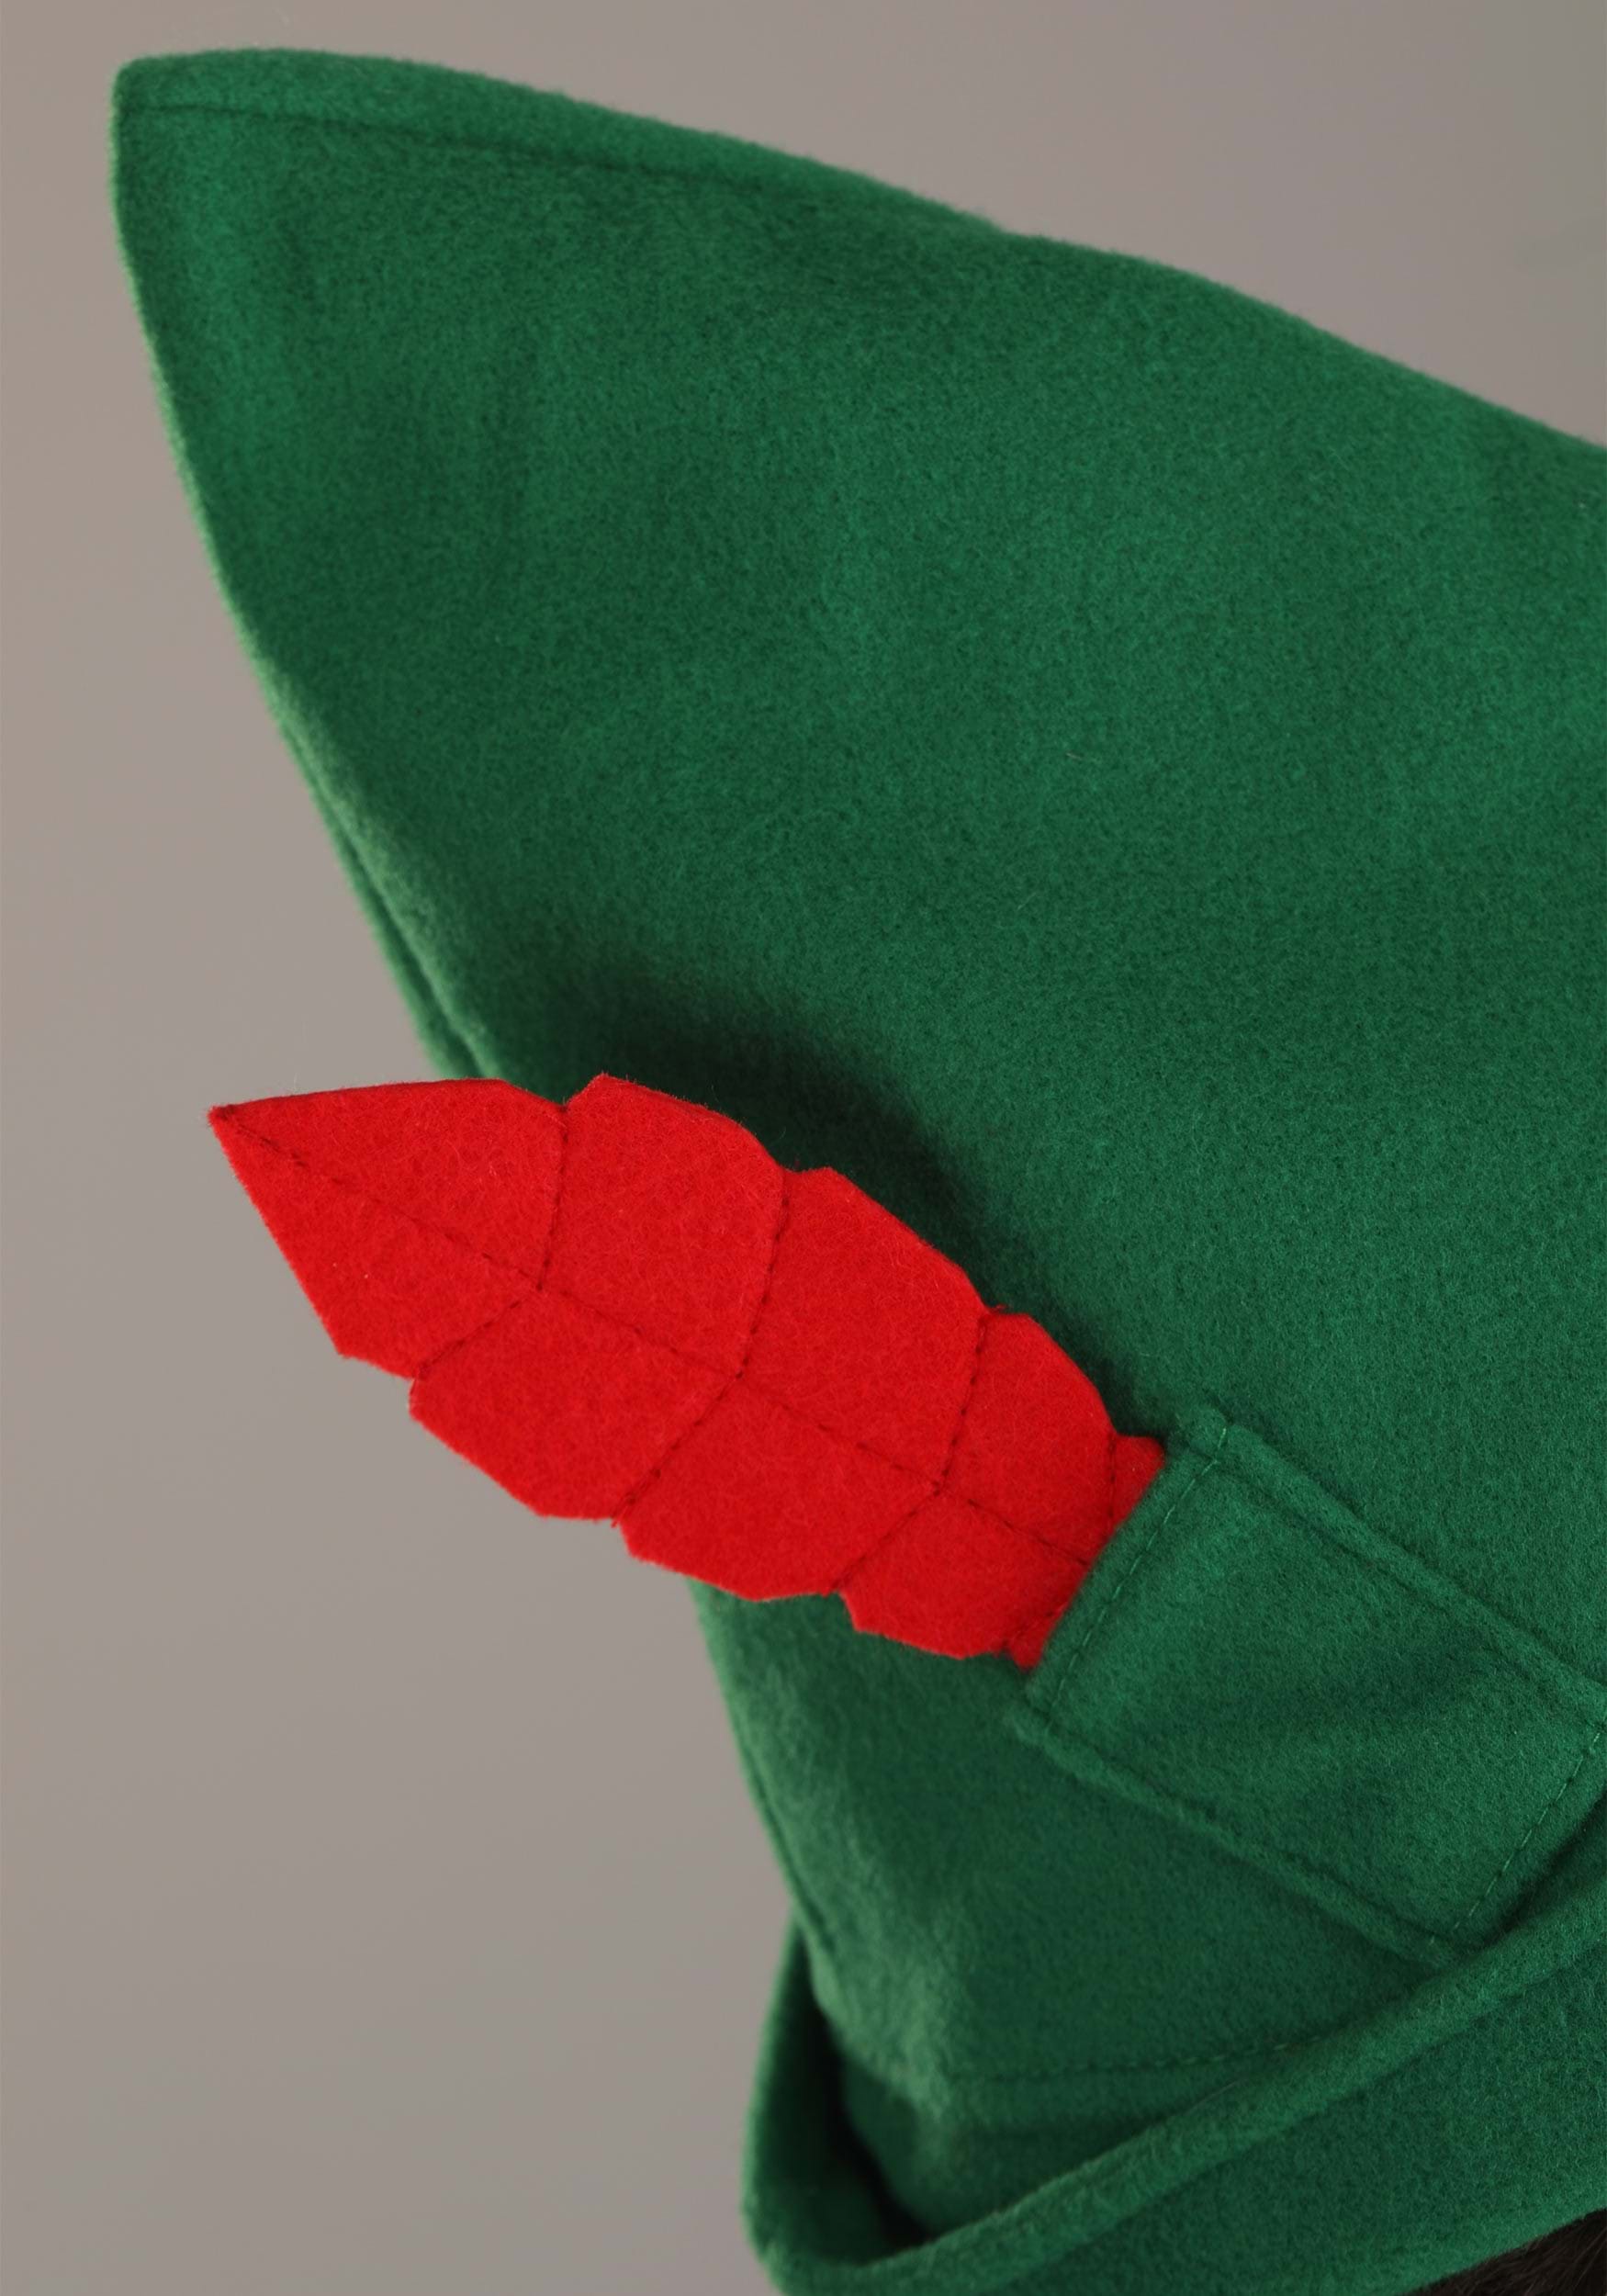 Disney Peter Pan Green Costume Hat For Men